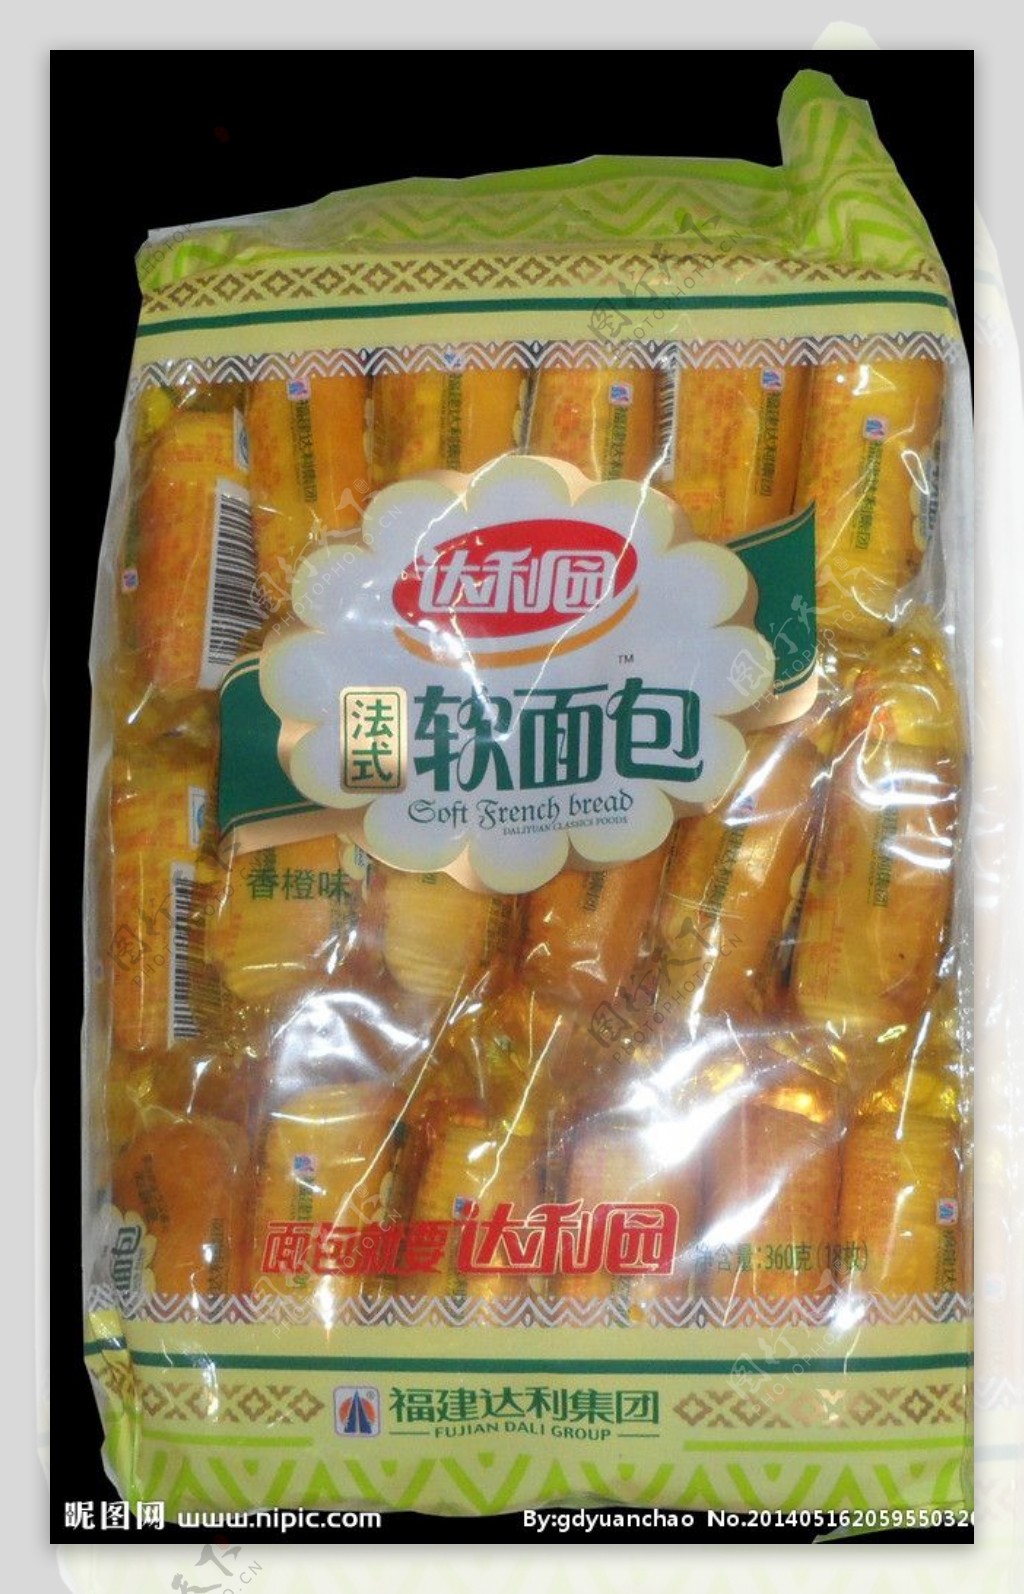 达利园 软面包-香奶味 | DLY Soft Bread-Milk Flv 200g - HappyGo Asian Market